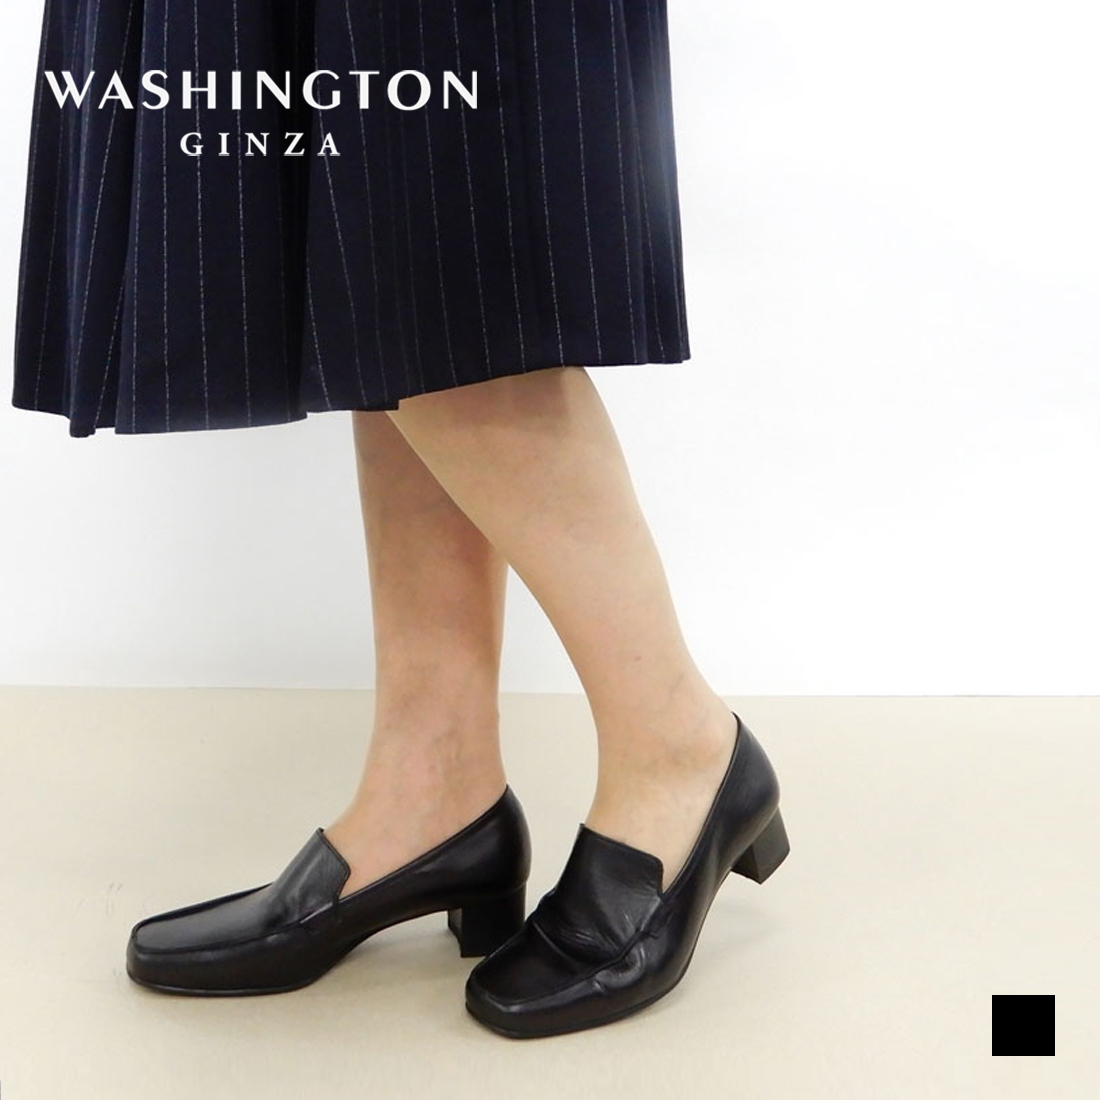 パンプス 痛くない 幅広 柔らかい 黒 ブラック 結婚式 パーティ フォーマルパンプス 通勤 オフィス 歩きやすい 履きやすい 銀座ワシントン画像